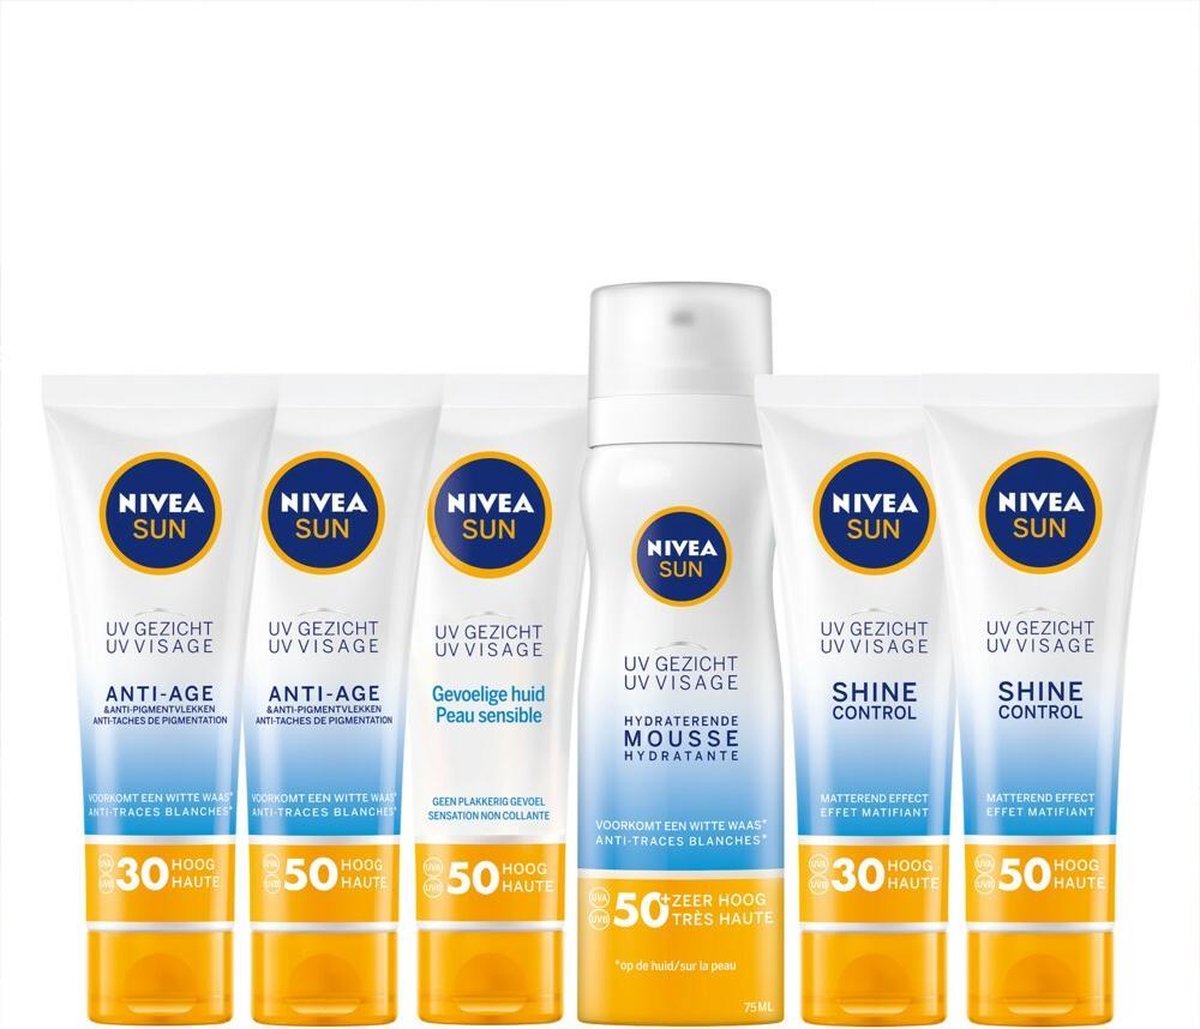 NIVEA SUN Gezicht Sensitive Zonnebrand Crème Gezicht Gevoelige Huid - 50 ml | bol.com